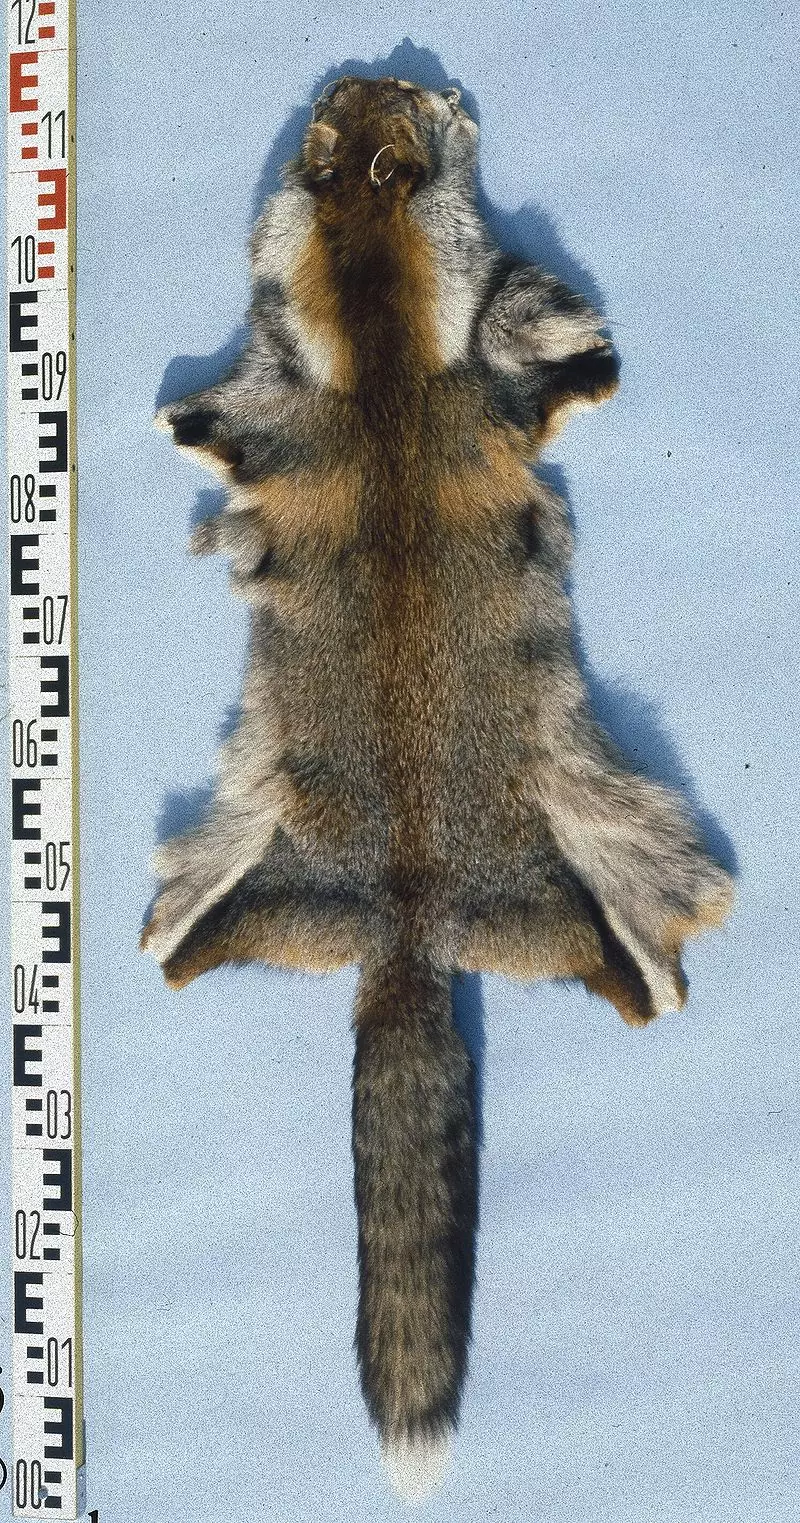 Обыкновенная лисица